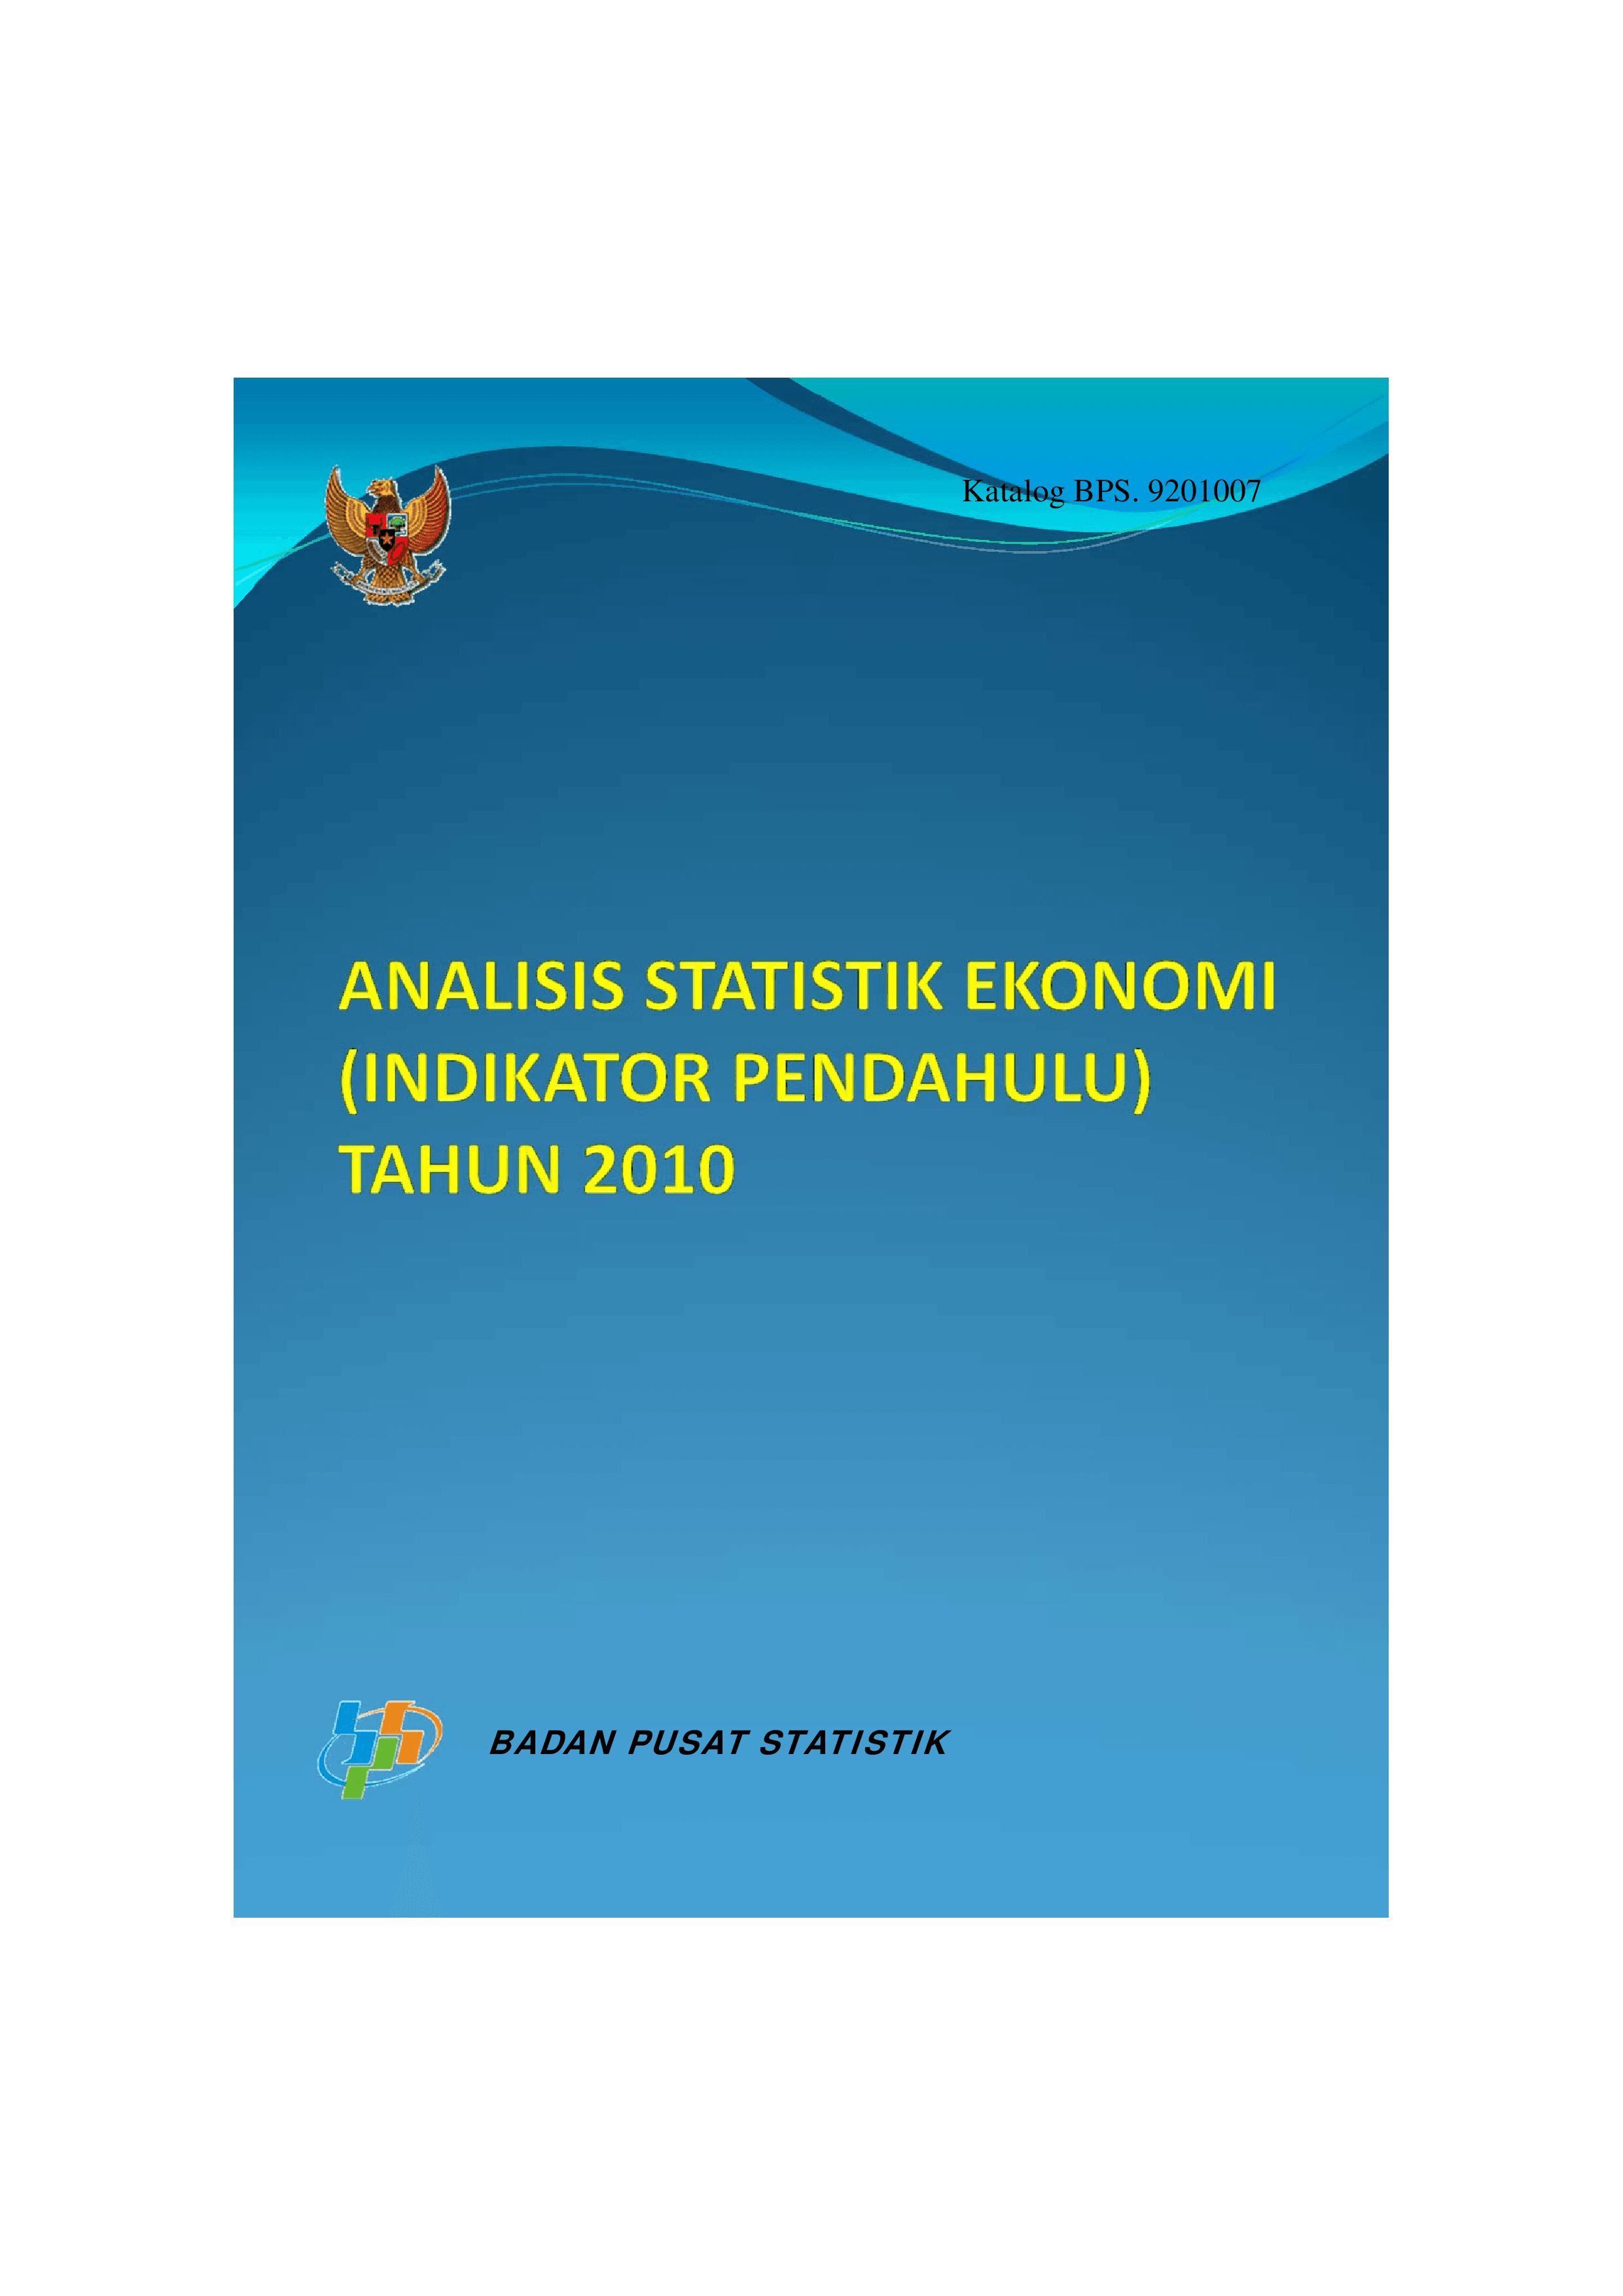 Analisis Statistik Ekonomi (Analisis Indikator Pendahulu) Tahun 2010